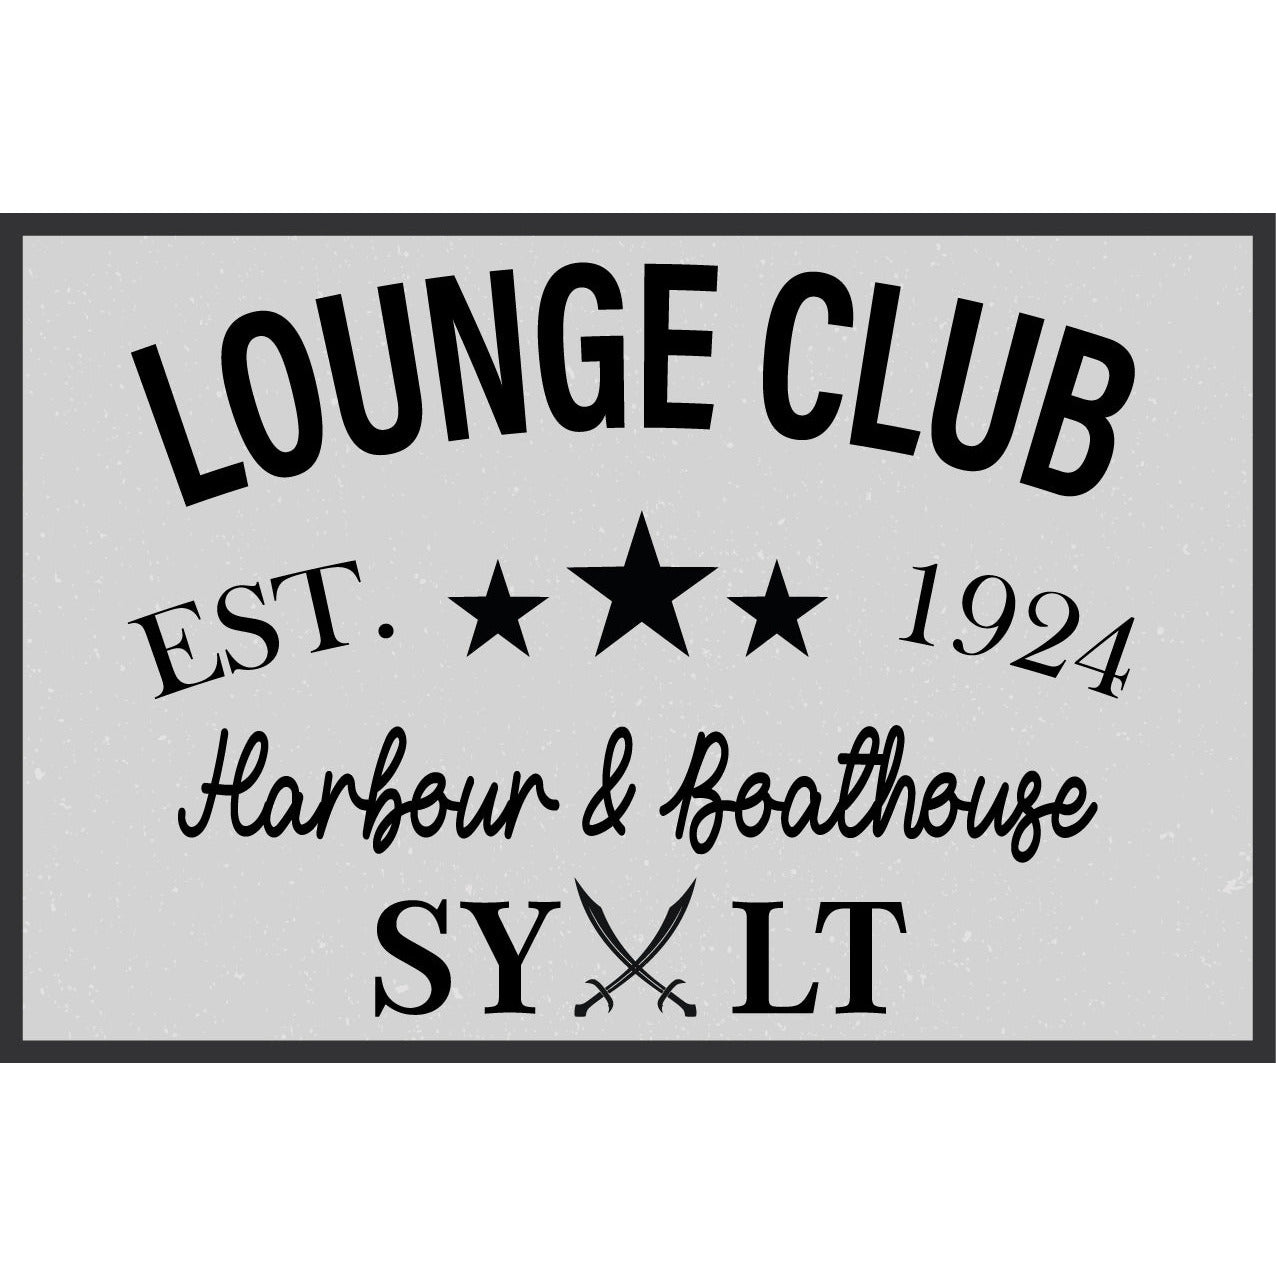 Blechschild - Lounge Club